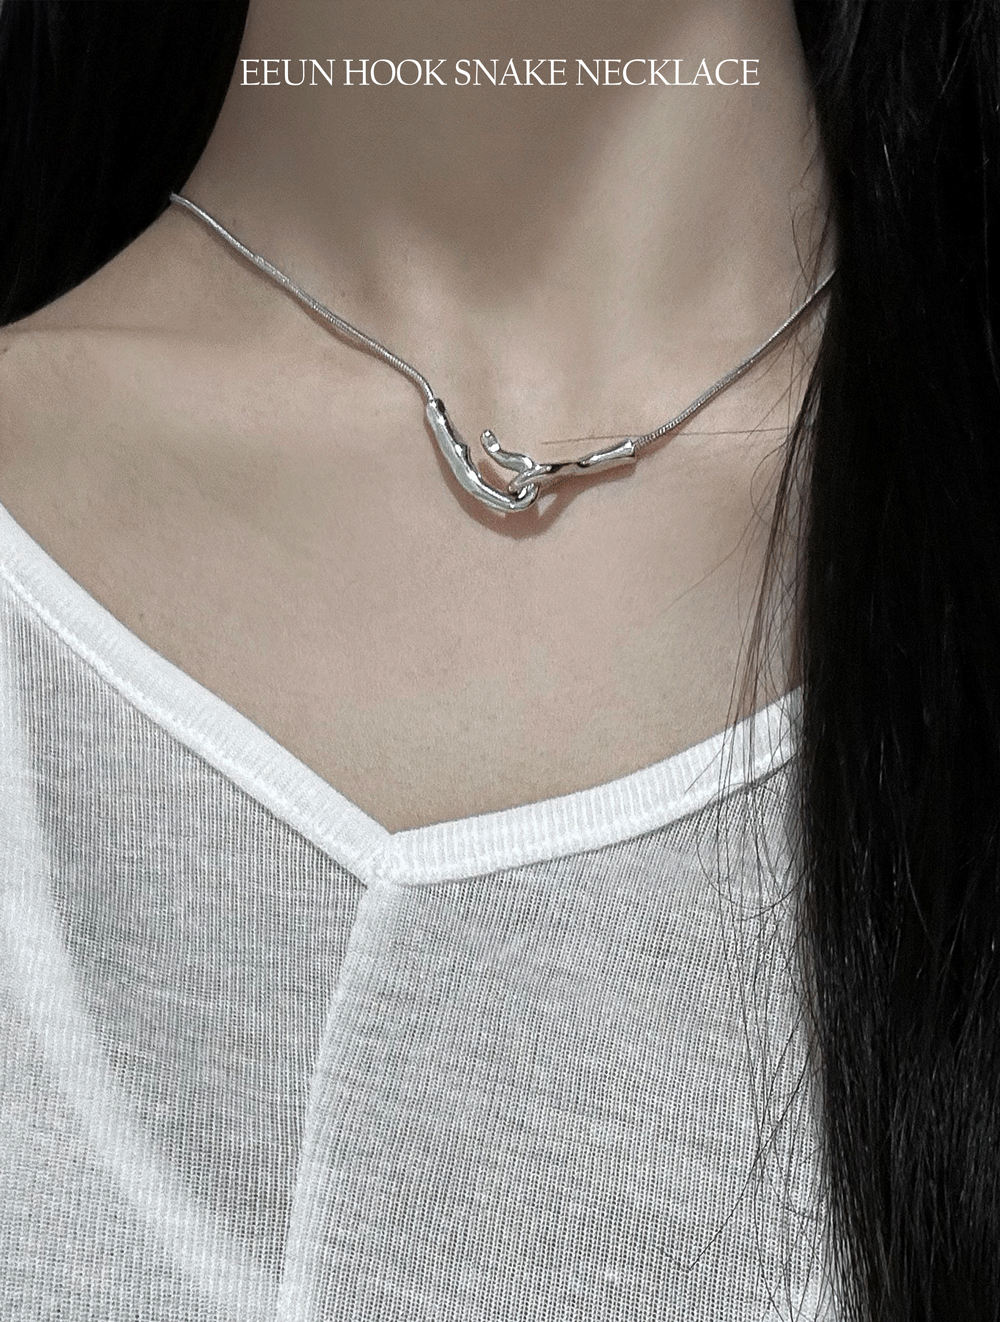 Hook snake necklace